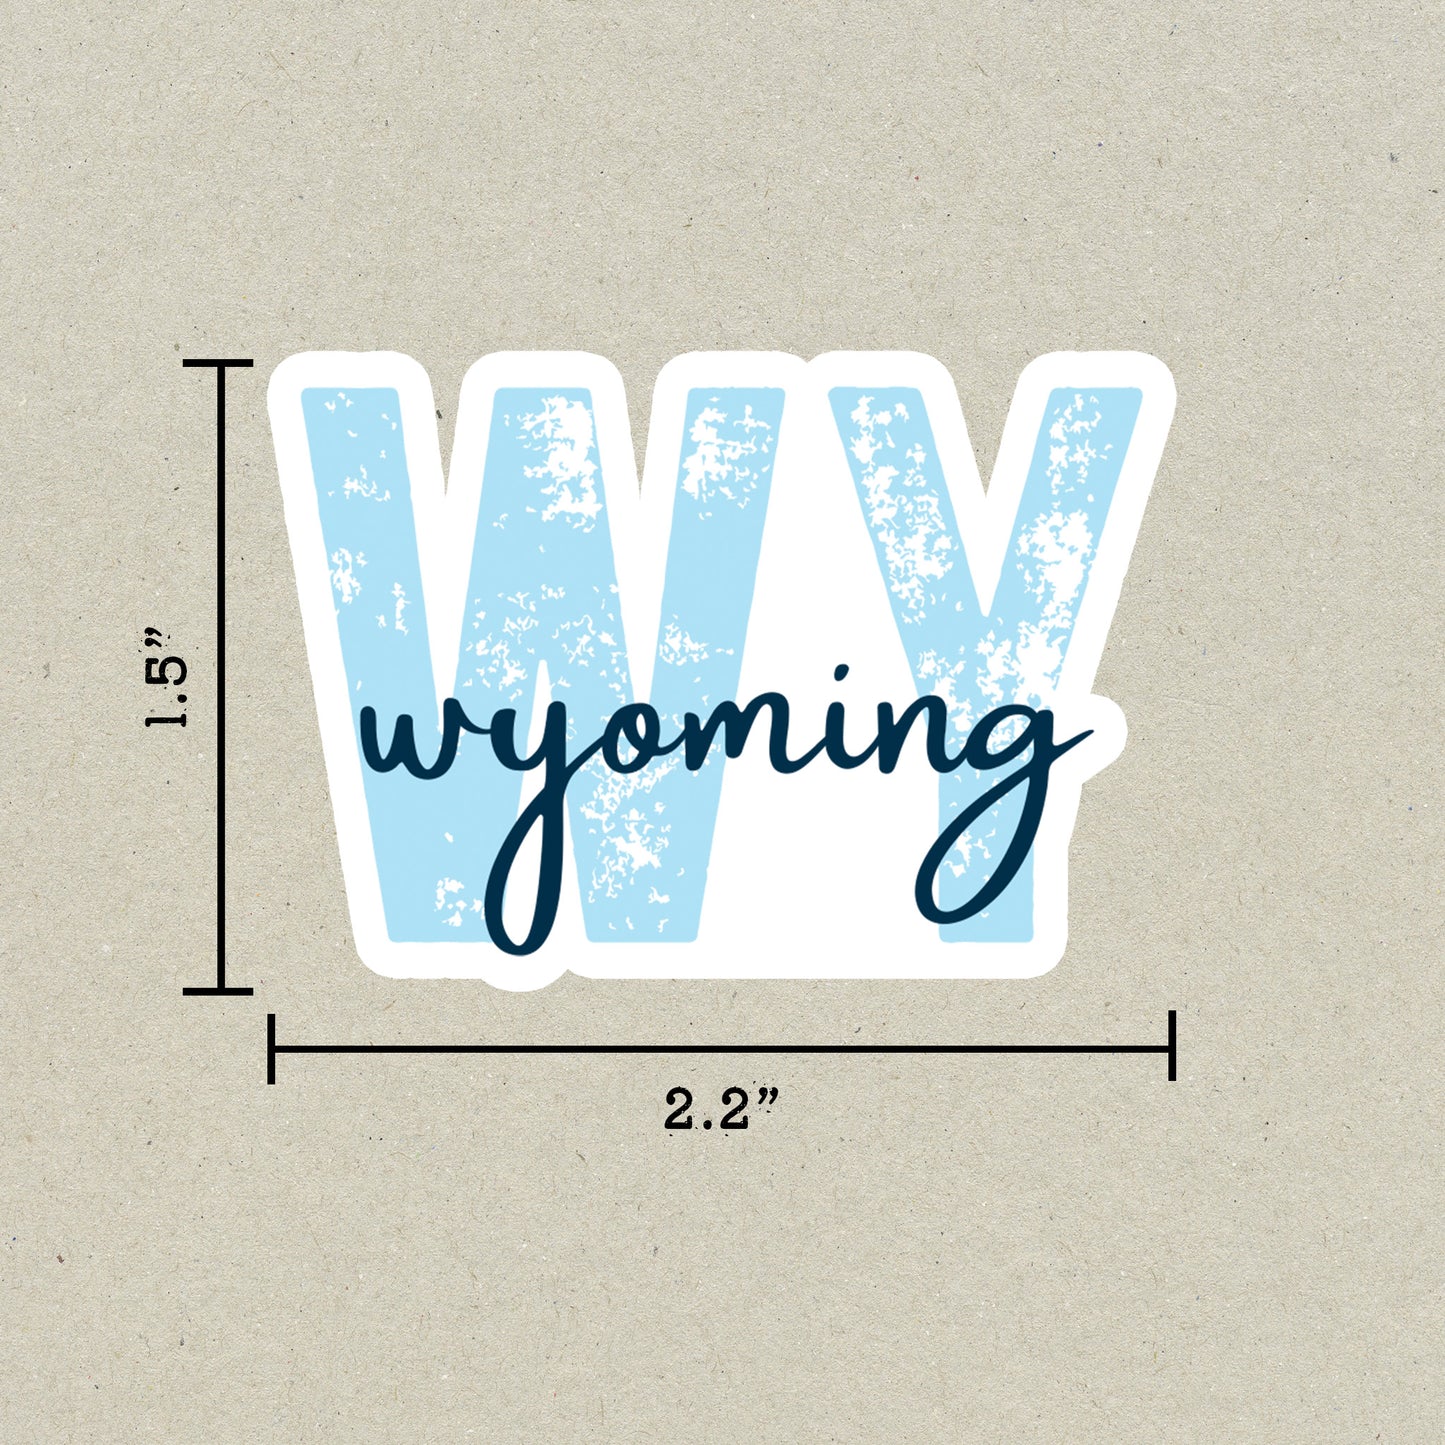 Wyoming State Code Sticker